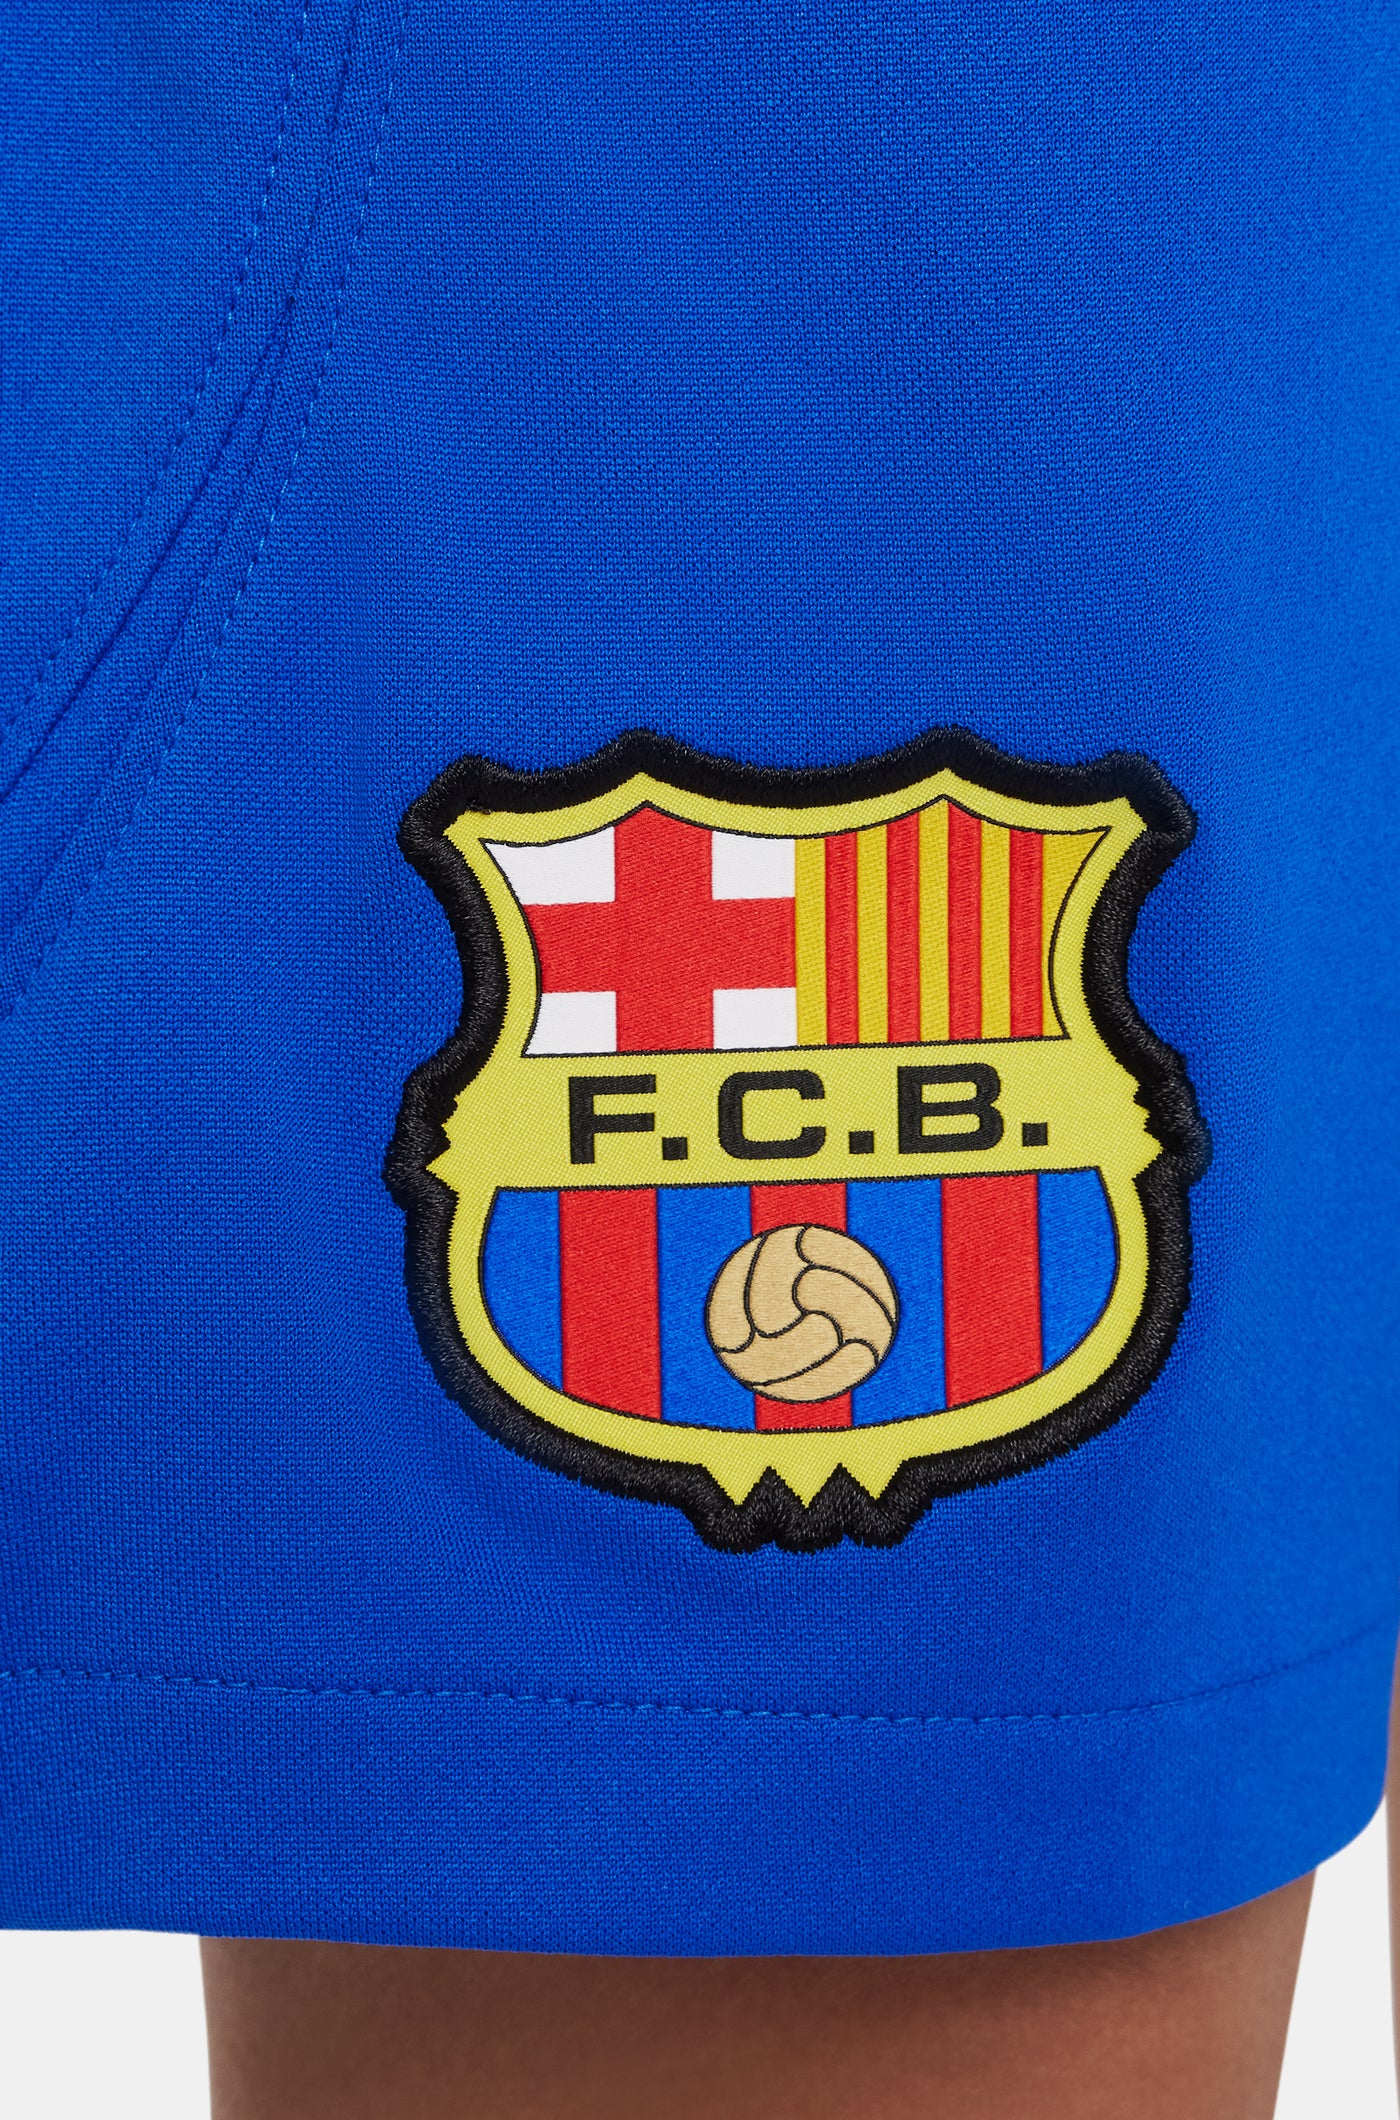 Pantalons segon equipament FC Barcelona 23/24 - Junior